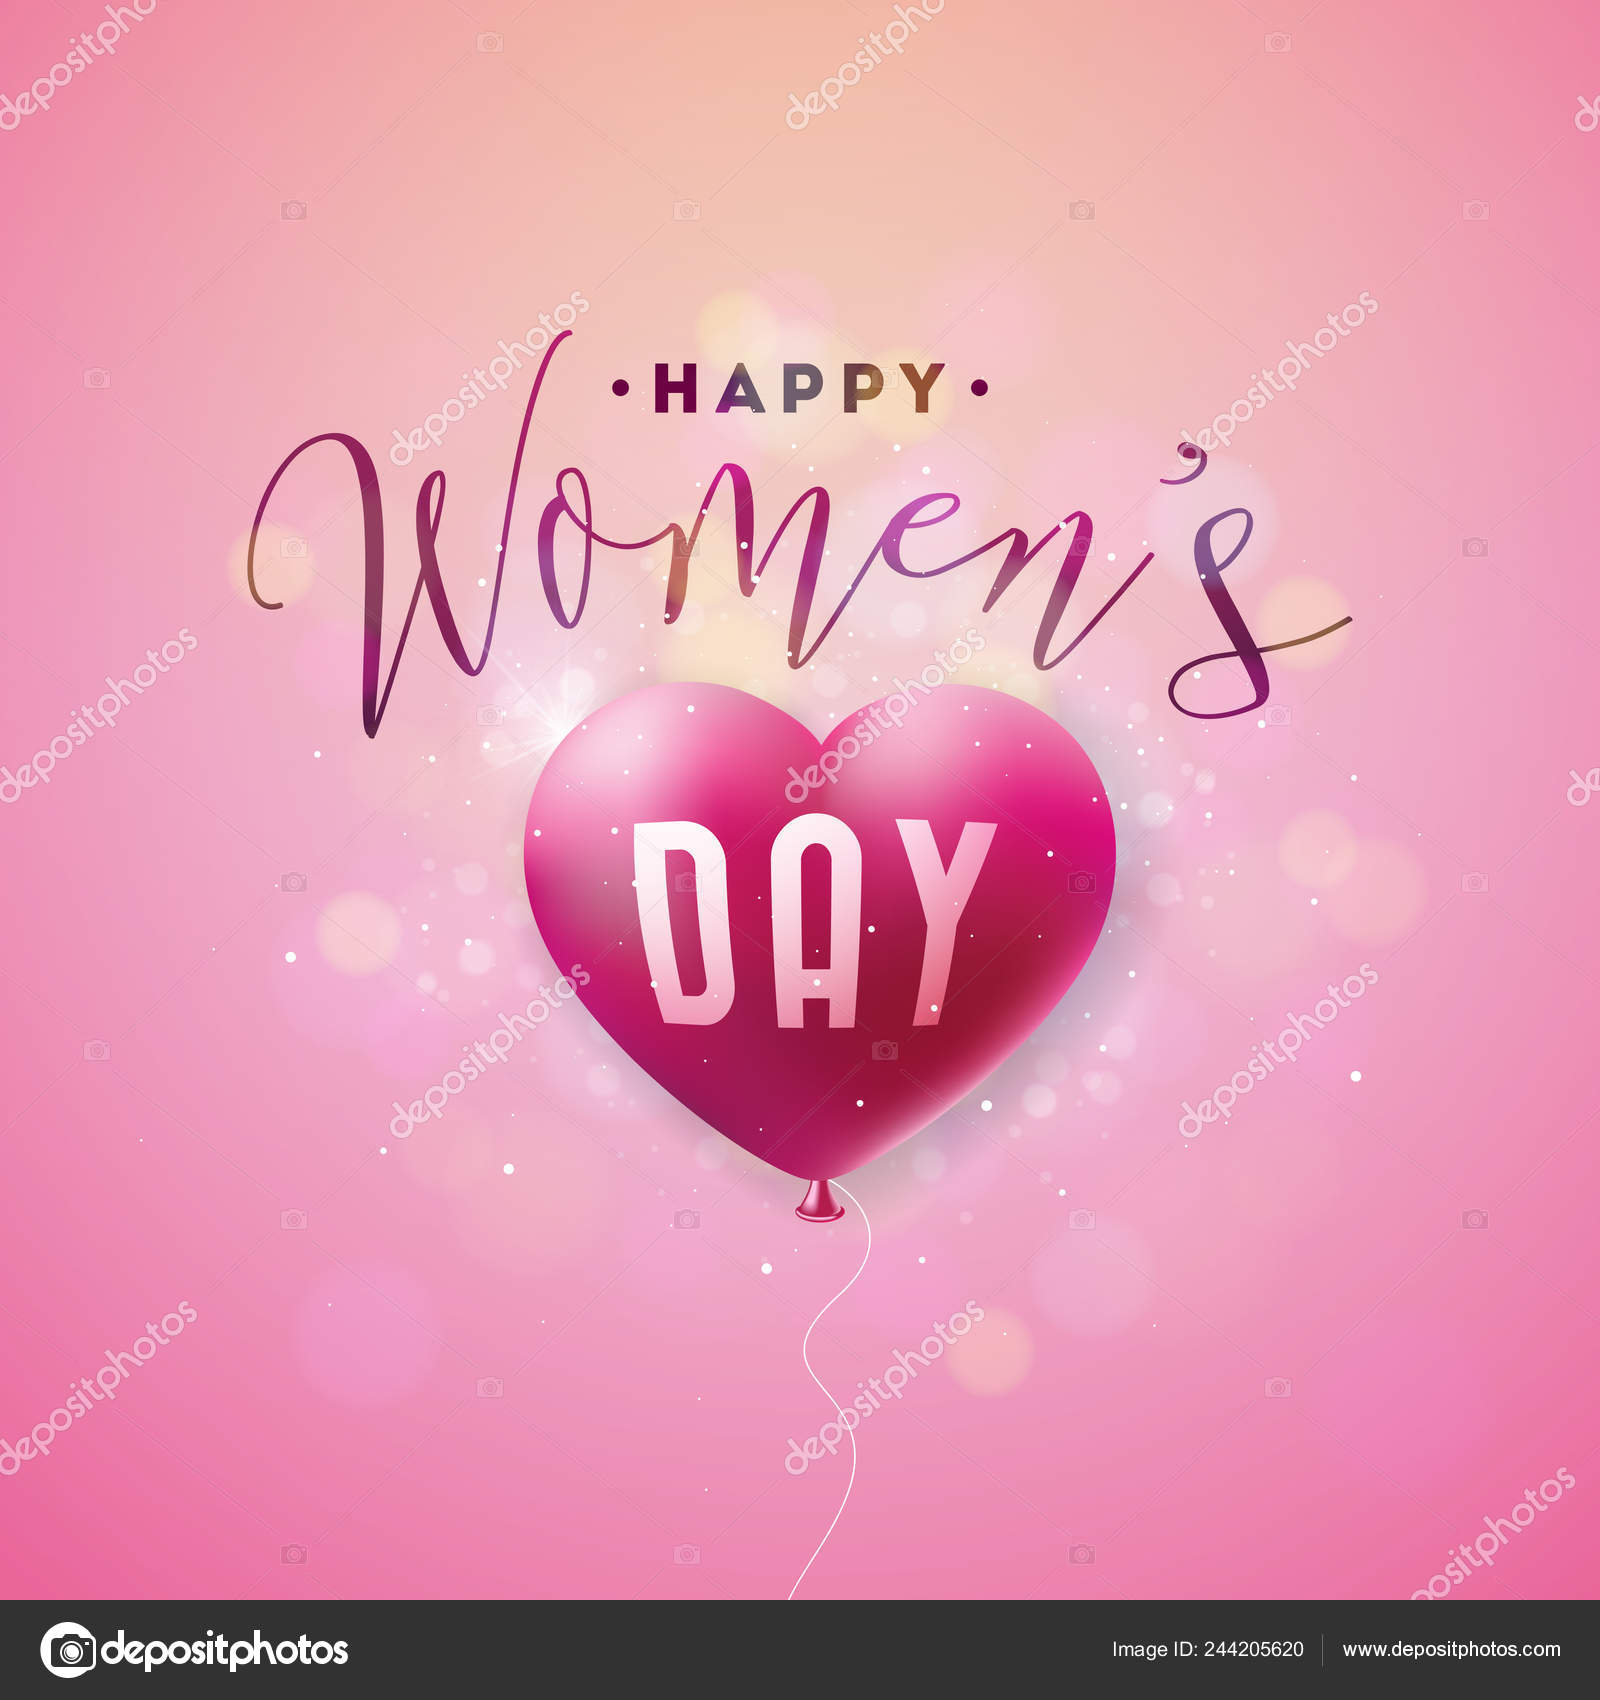 幸せな女性の日の挨拶カード 国際的な休日 熱気球とピンクの背景のタイポグラフィ デザイン イラスト ベクトル春 3 月 8 日お祝いテンプレート ストックベクター C Articular